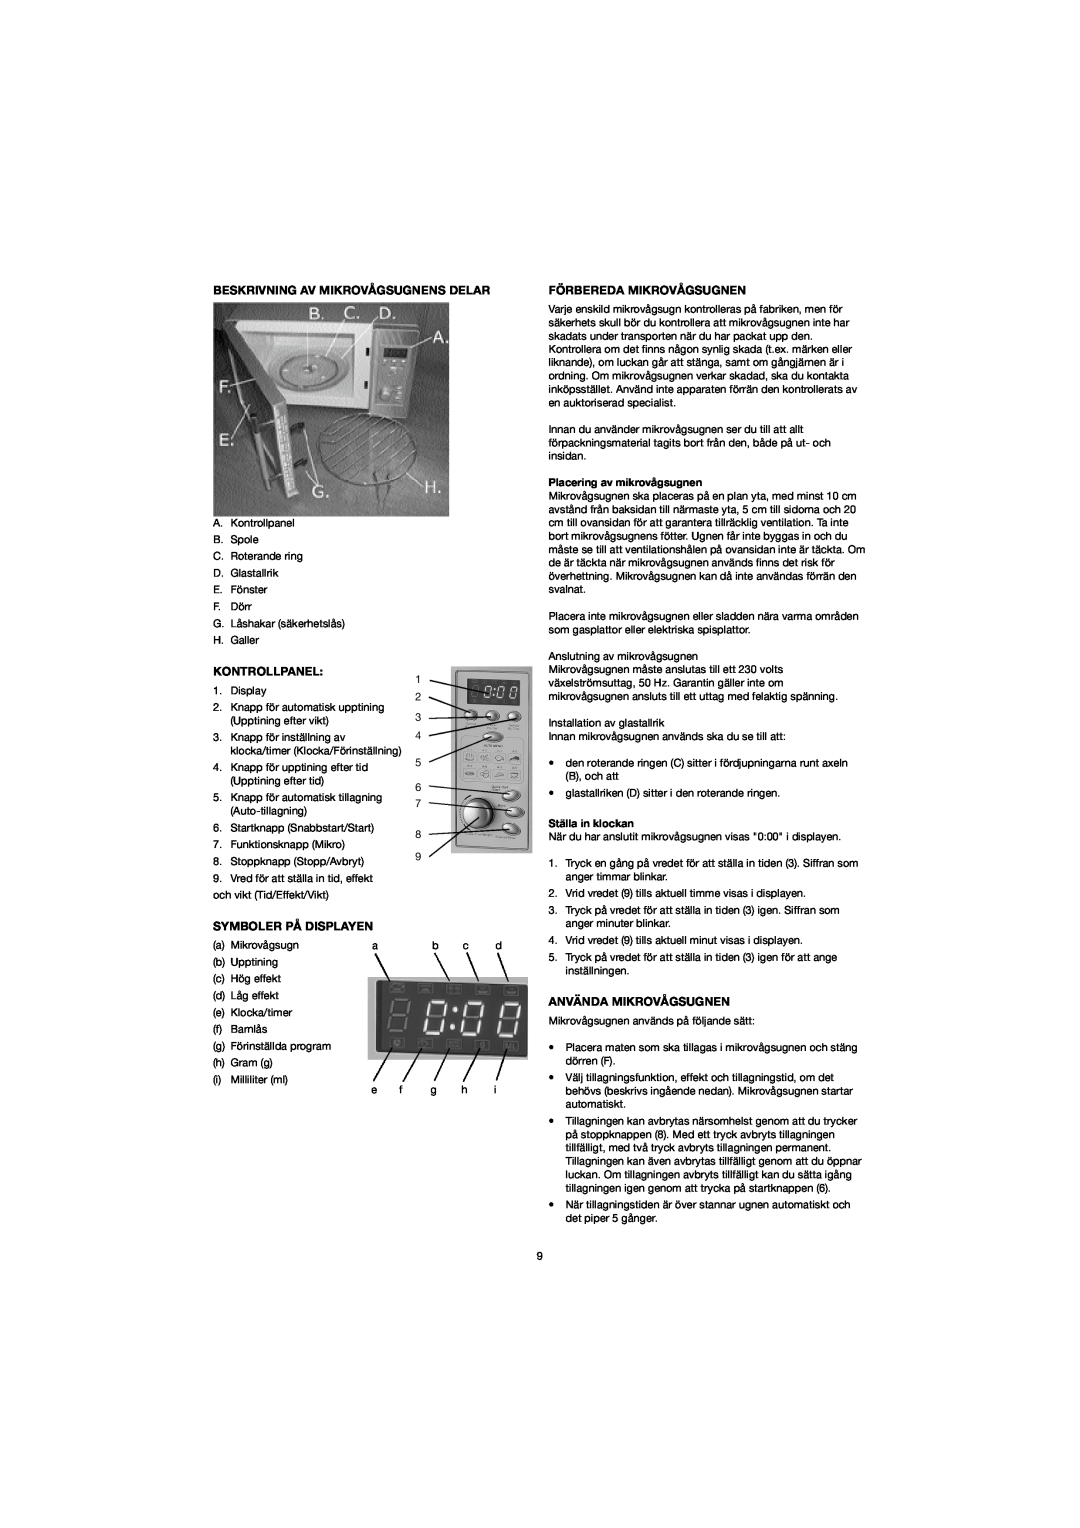 Melissa 753-094 manual Beskrivning Av Mikrovågsugnens Delar, Kontrollpanel, Symboler På Displayen, Förbereda Mikrovågsugnen 